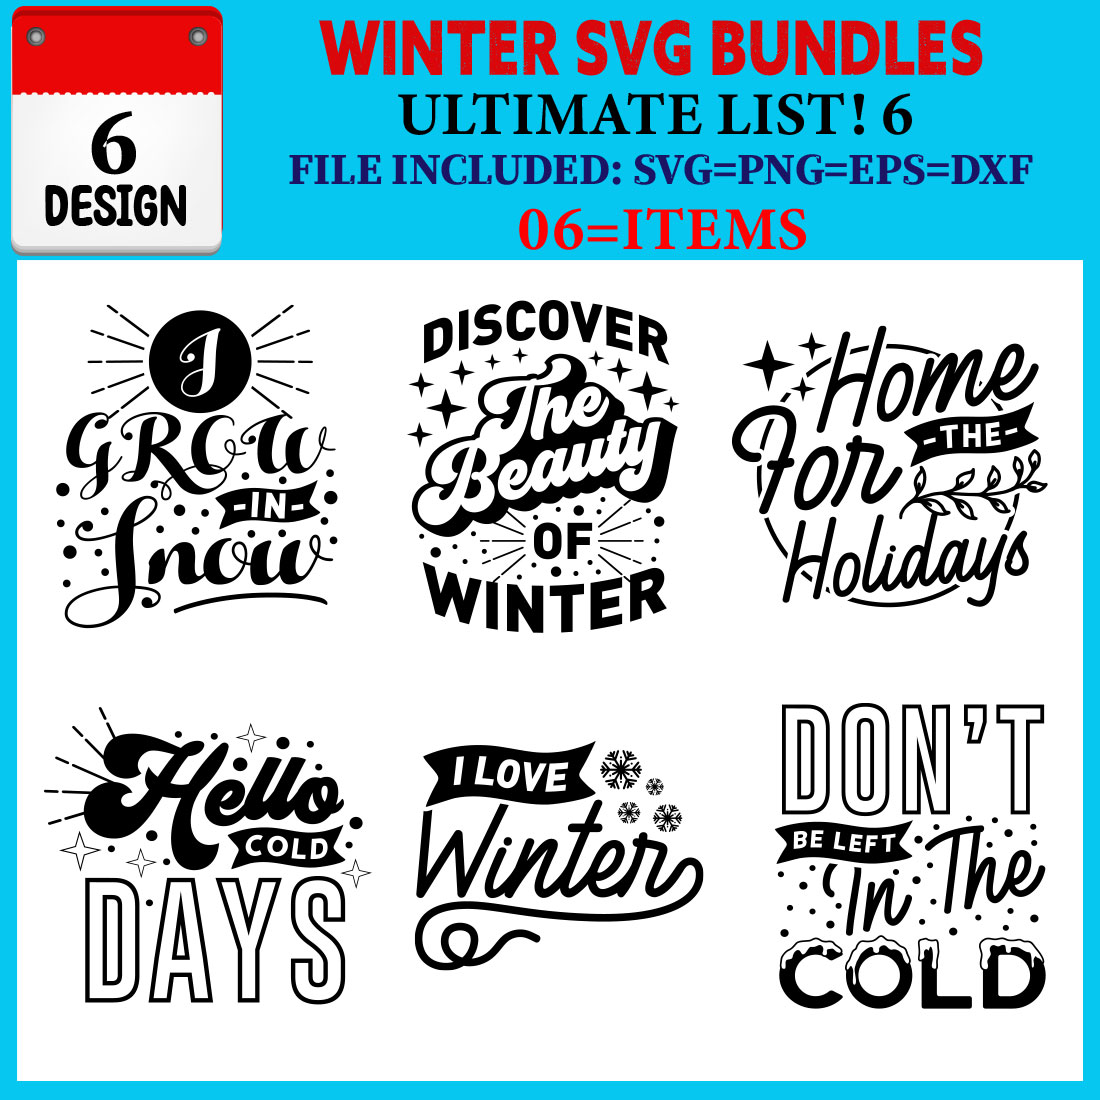 Winter T-shirt Design Bundle Vol-02 cover image.